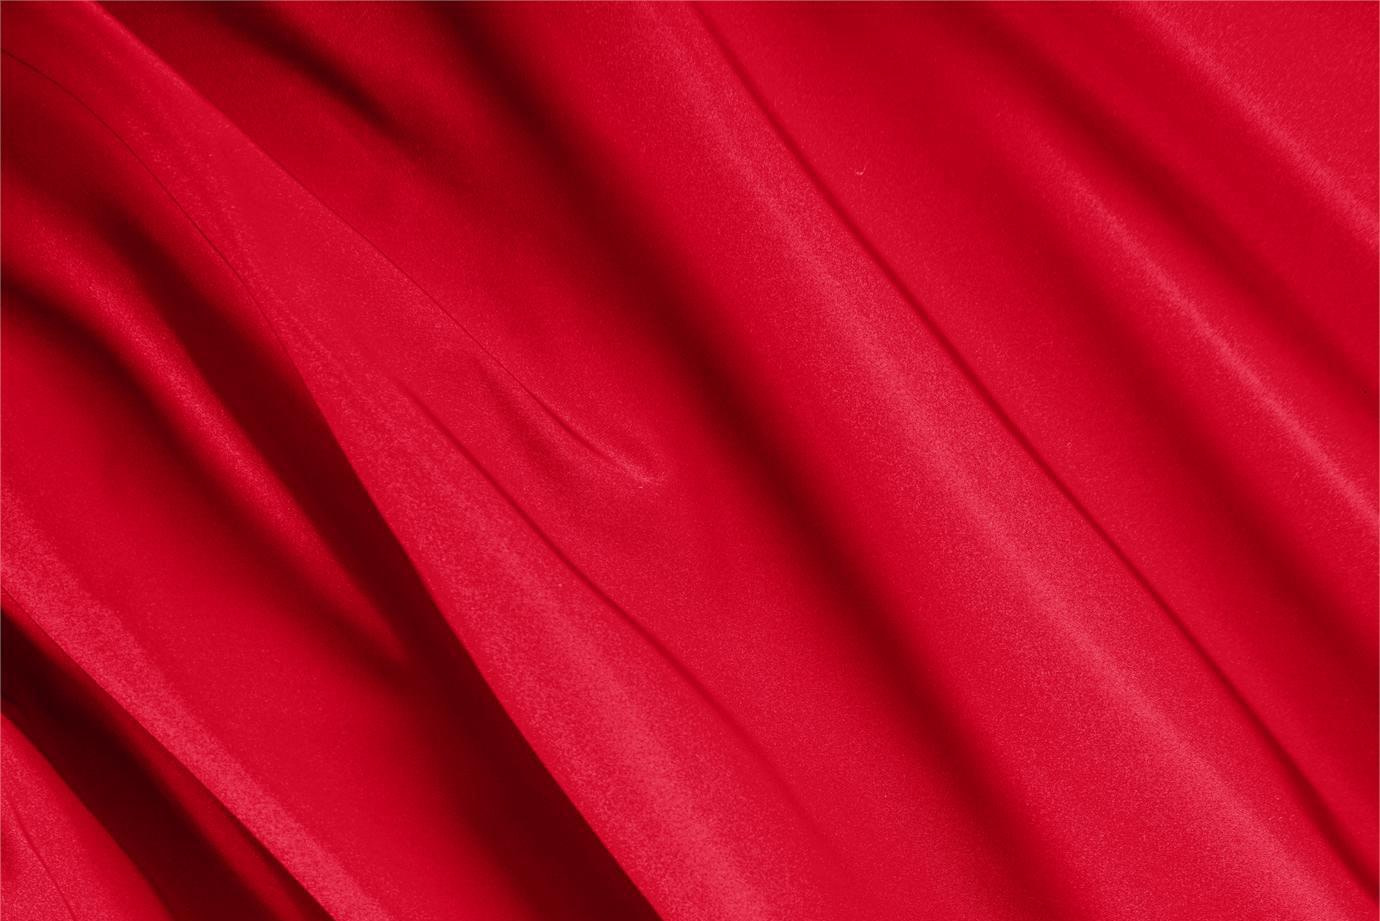 Tissu Radzemire Rouge feu en Soie pour vêtements